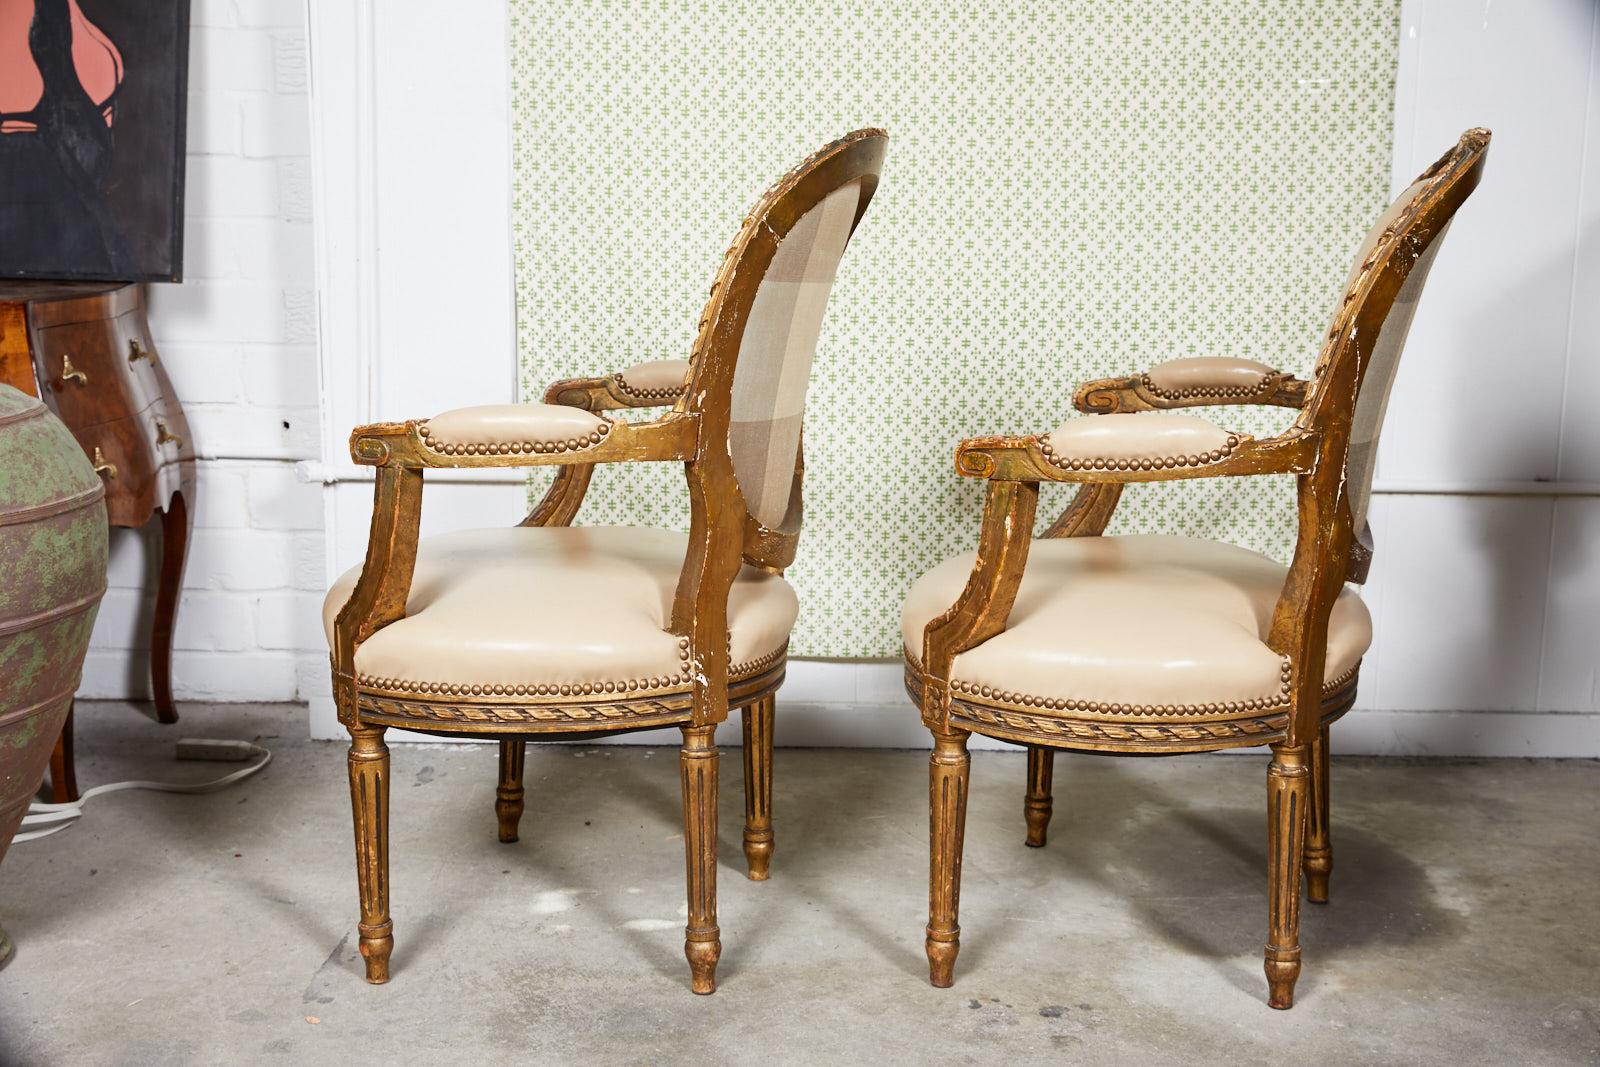 Paire de fauteuils français de style Louis XVI, datant de la fin du XIXe siècle, avec des cadres sculptés et dorés. Les chaises sont magnifiquement rembourrées dans un cuir taupe avec une garniture décorative à tête de clou en finition bronze et un